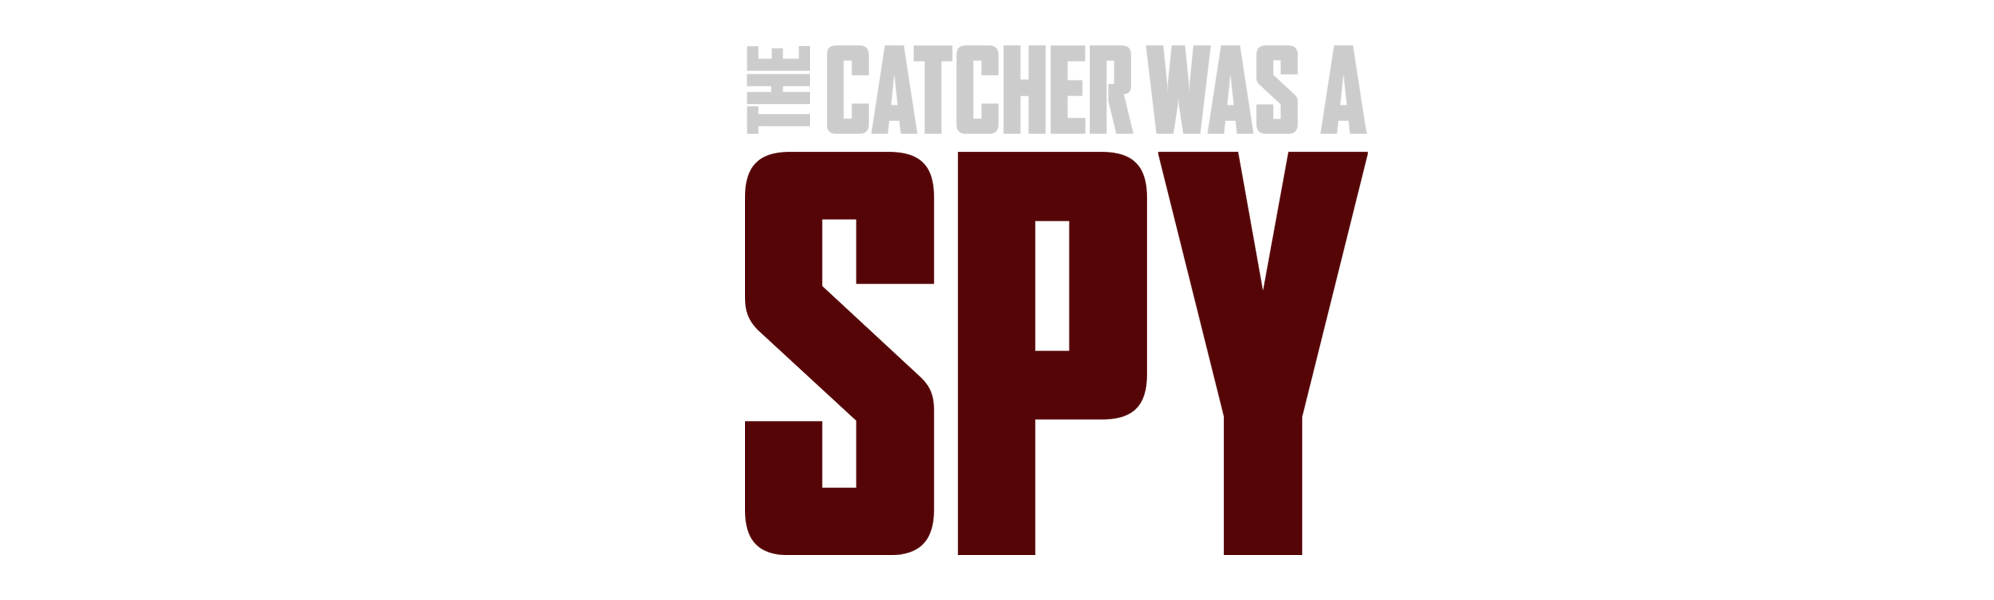 Catcher Was a Spy, The